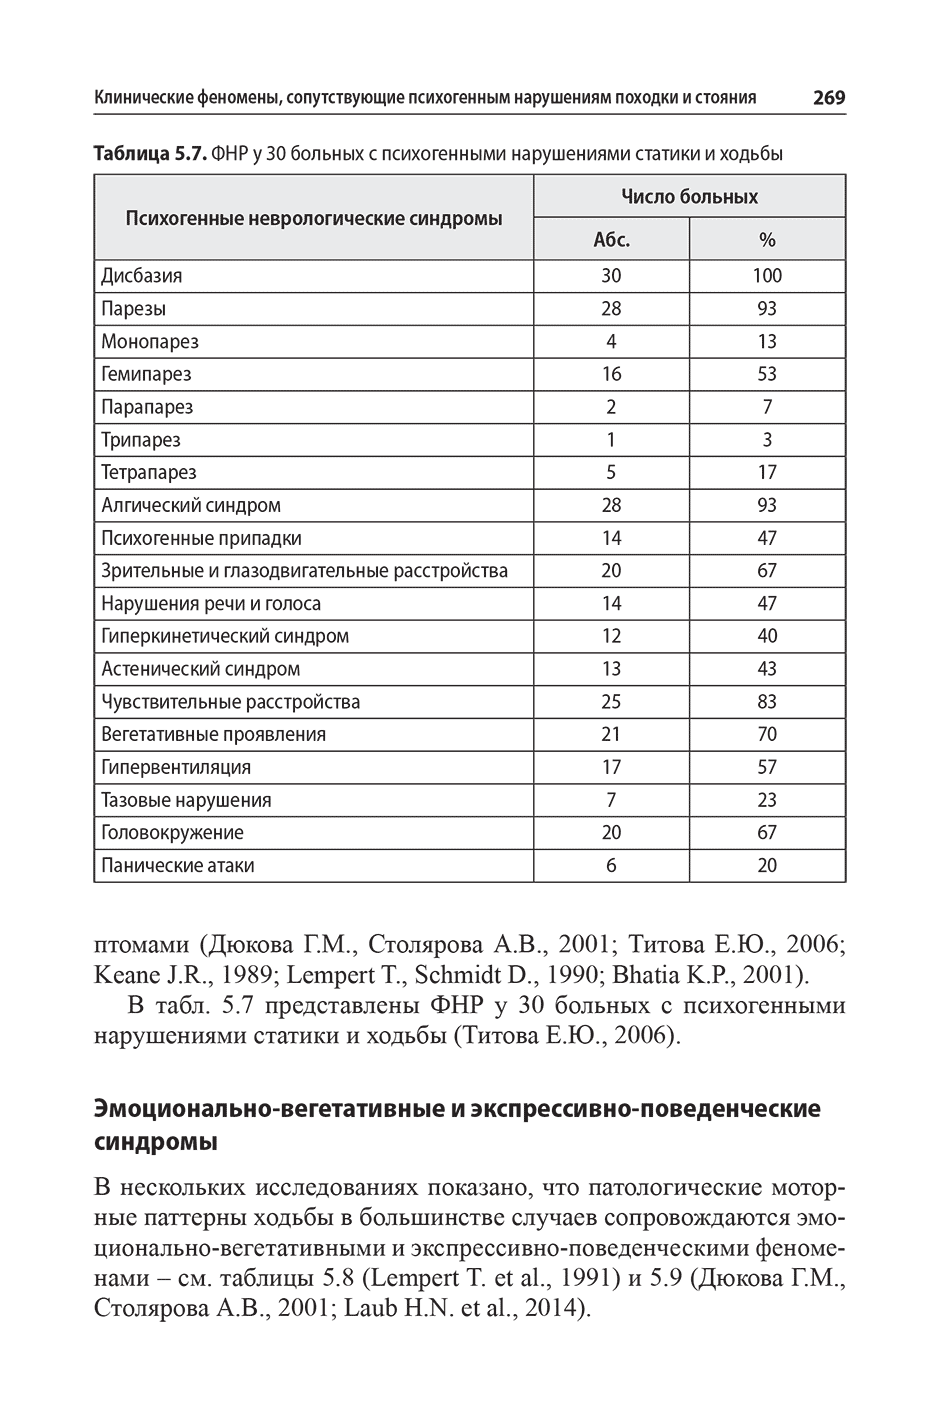 Таблица 5.7. ФНР у 30 больных с психогенными нарушениями статики и ходьбы